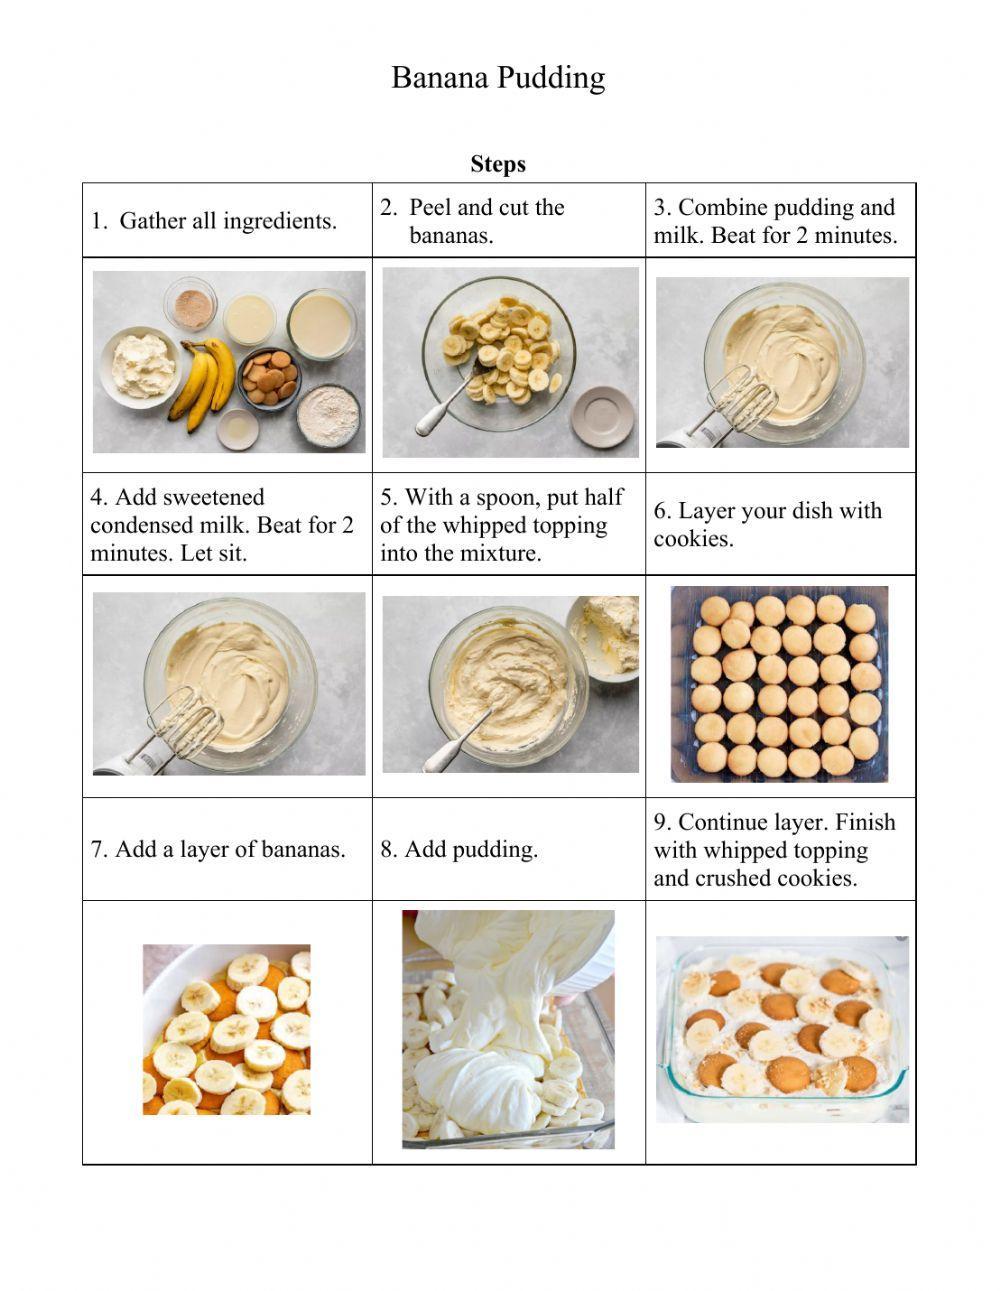 Banana Pudding Visual Recipe